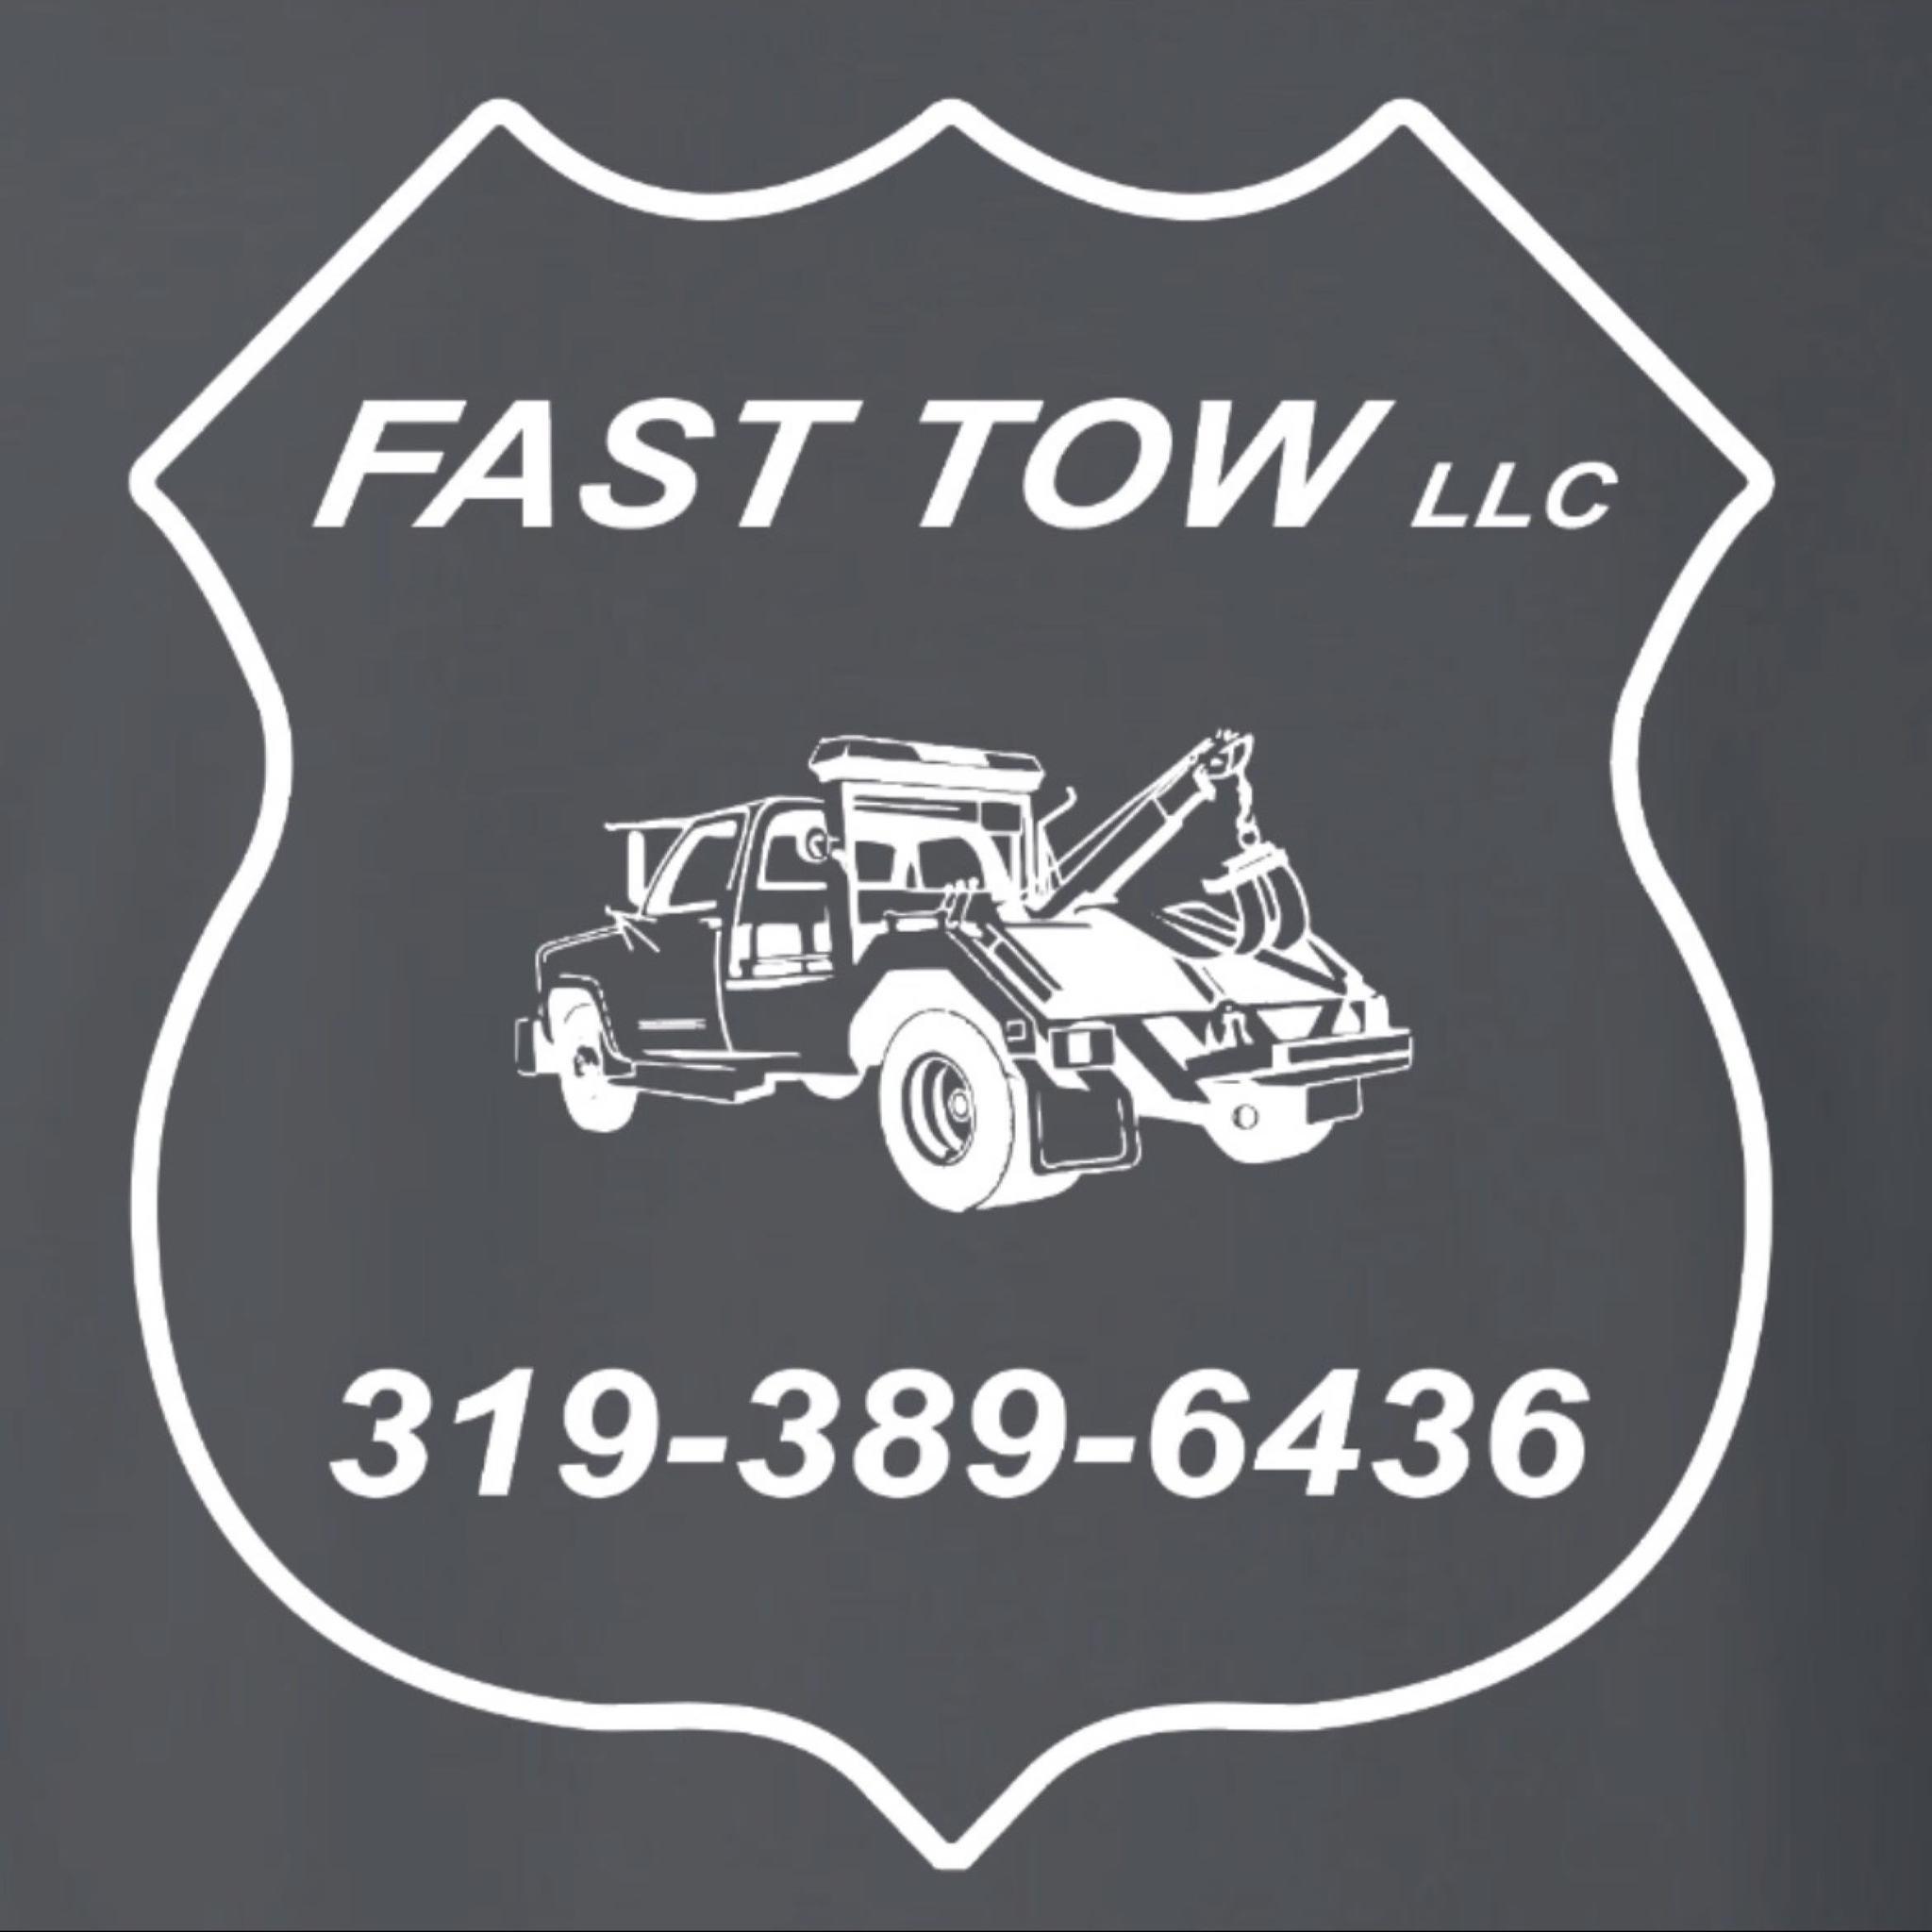 Fast Tow - Cedar Rapids, IA - (319)389-6436 | ShowMeLocal.com